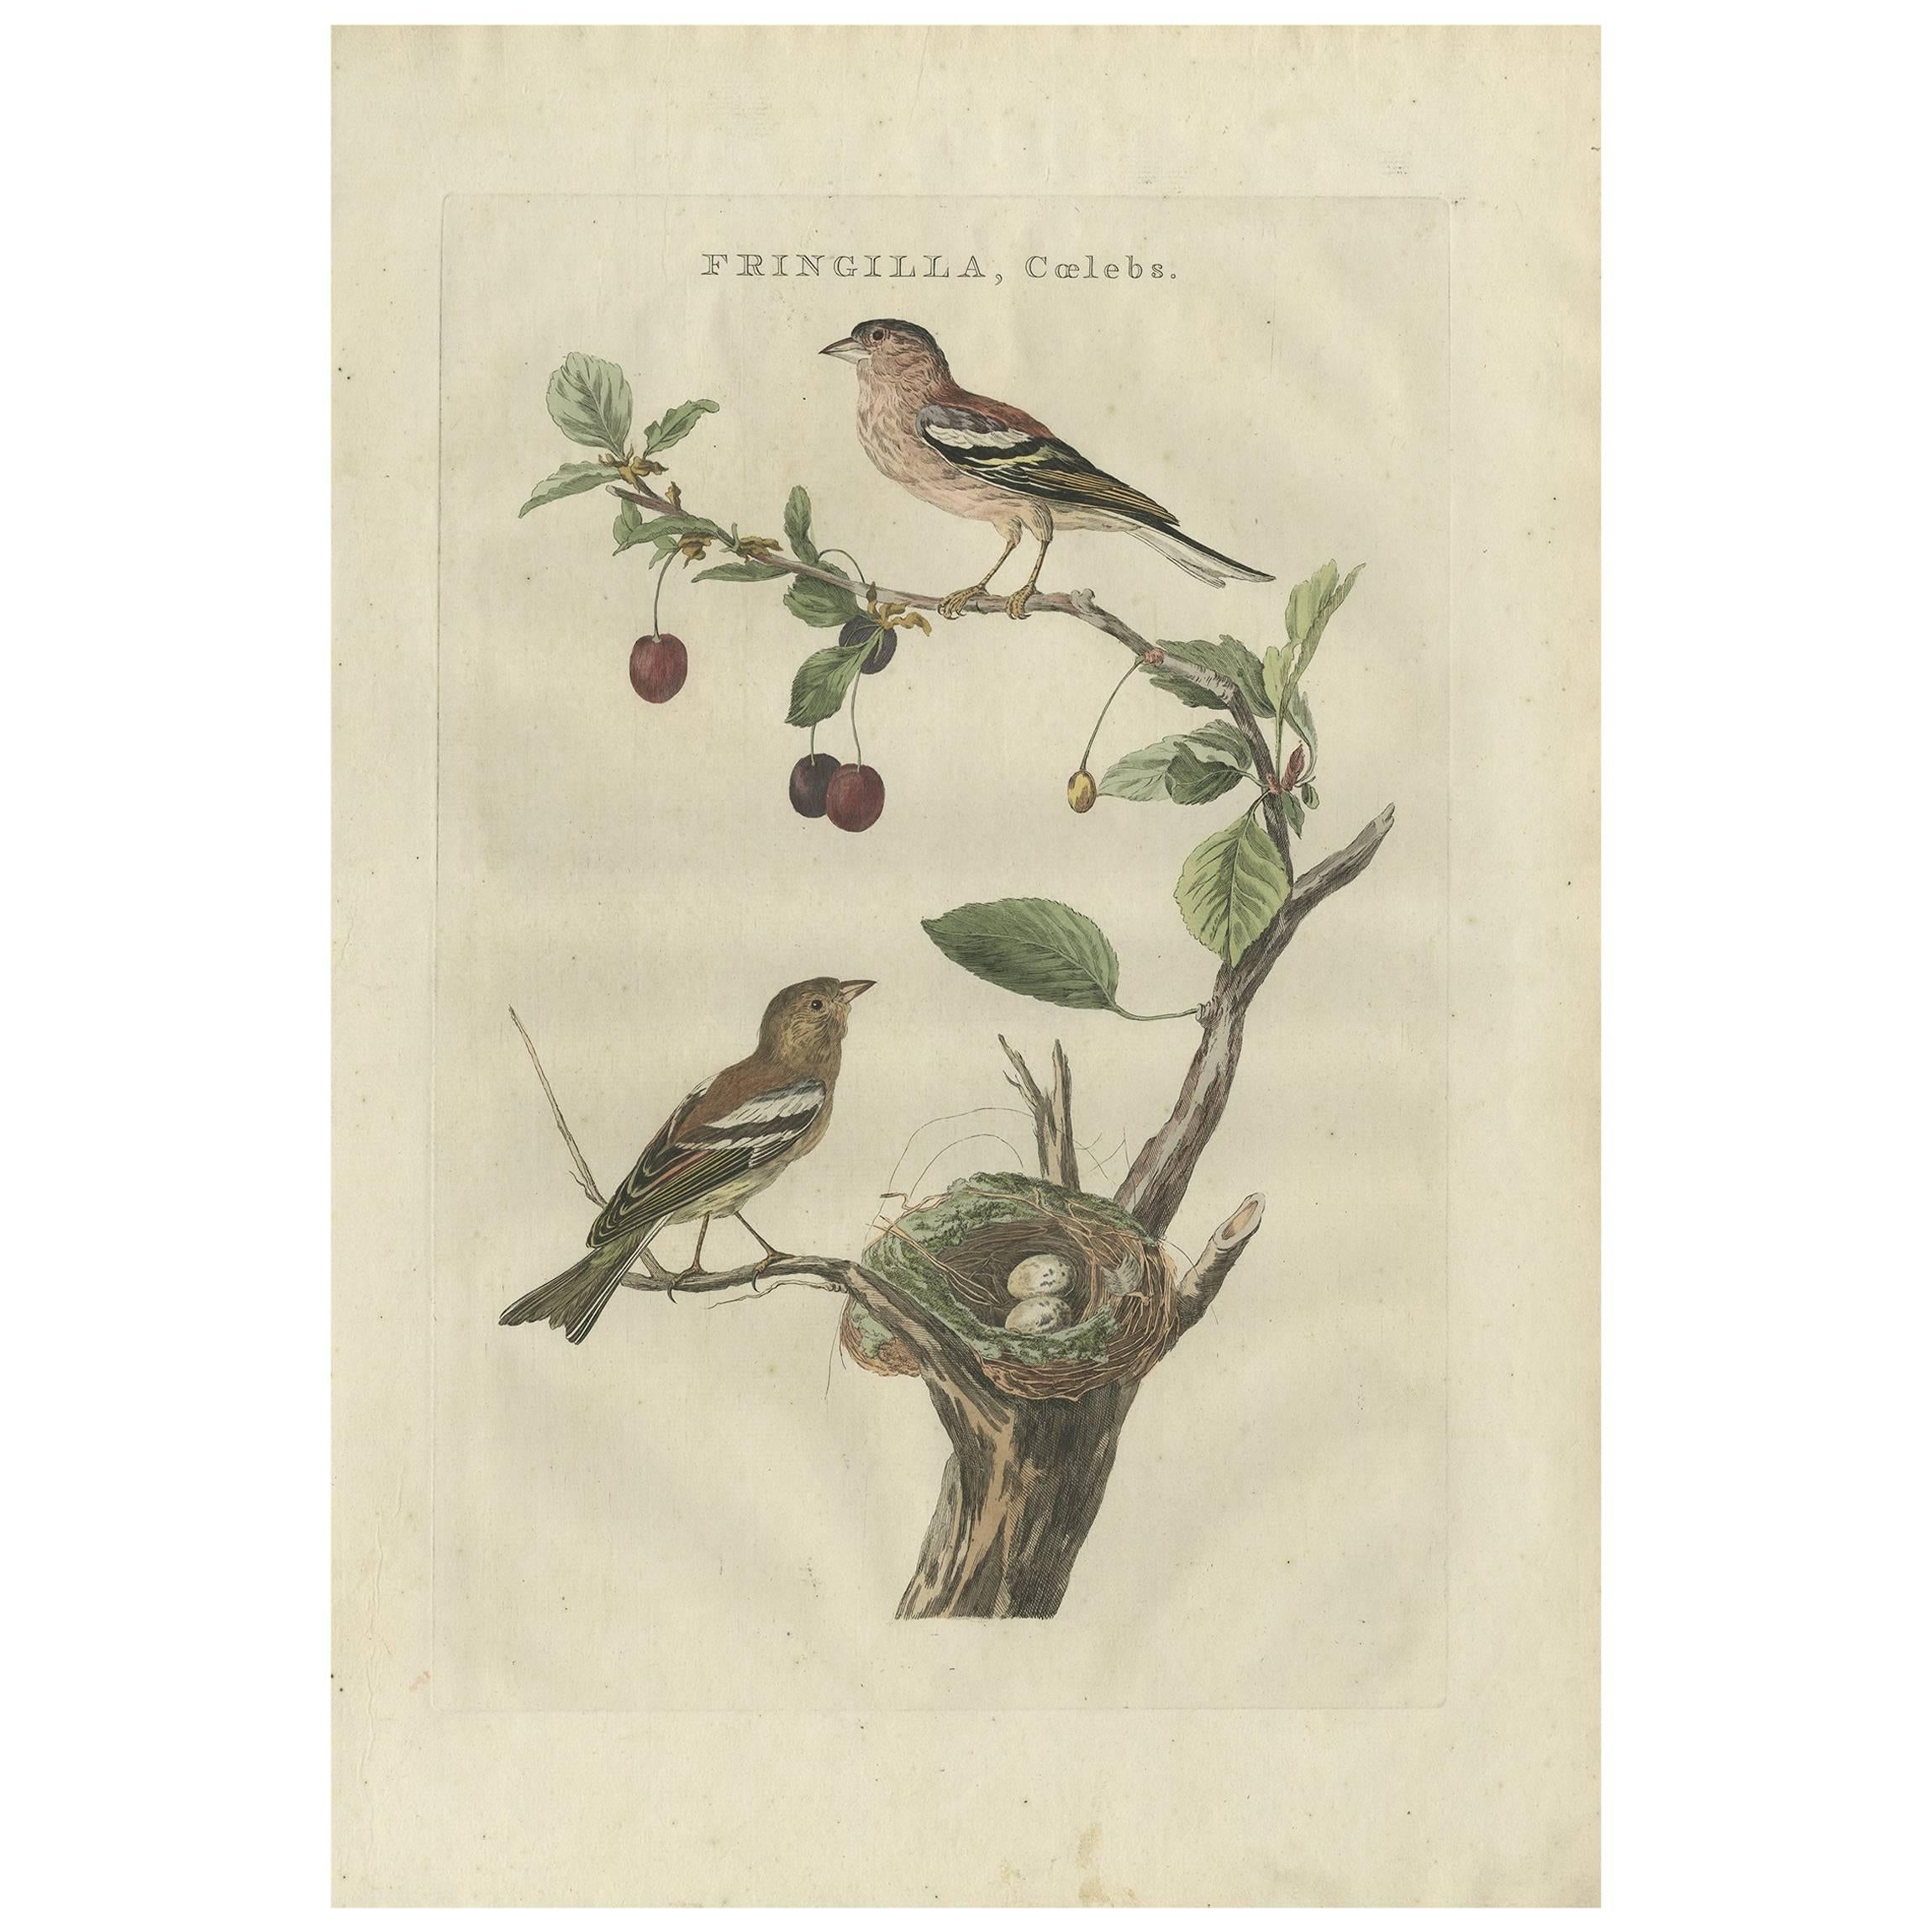 Impression oiseau antique colorée à la main du Chaffinch Common par Sepp & Nozeman, 1789